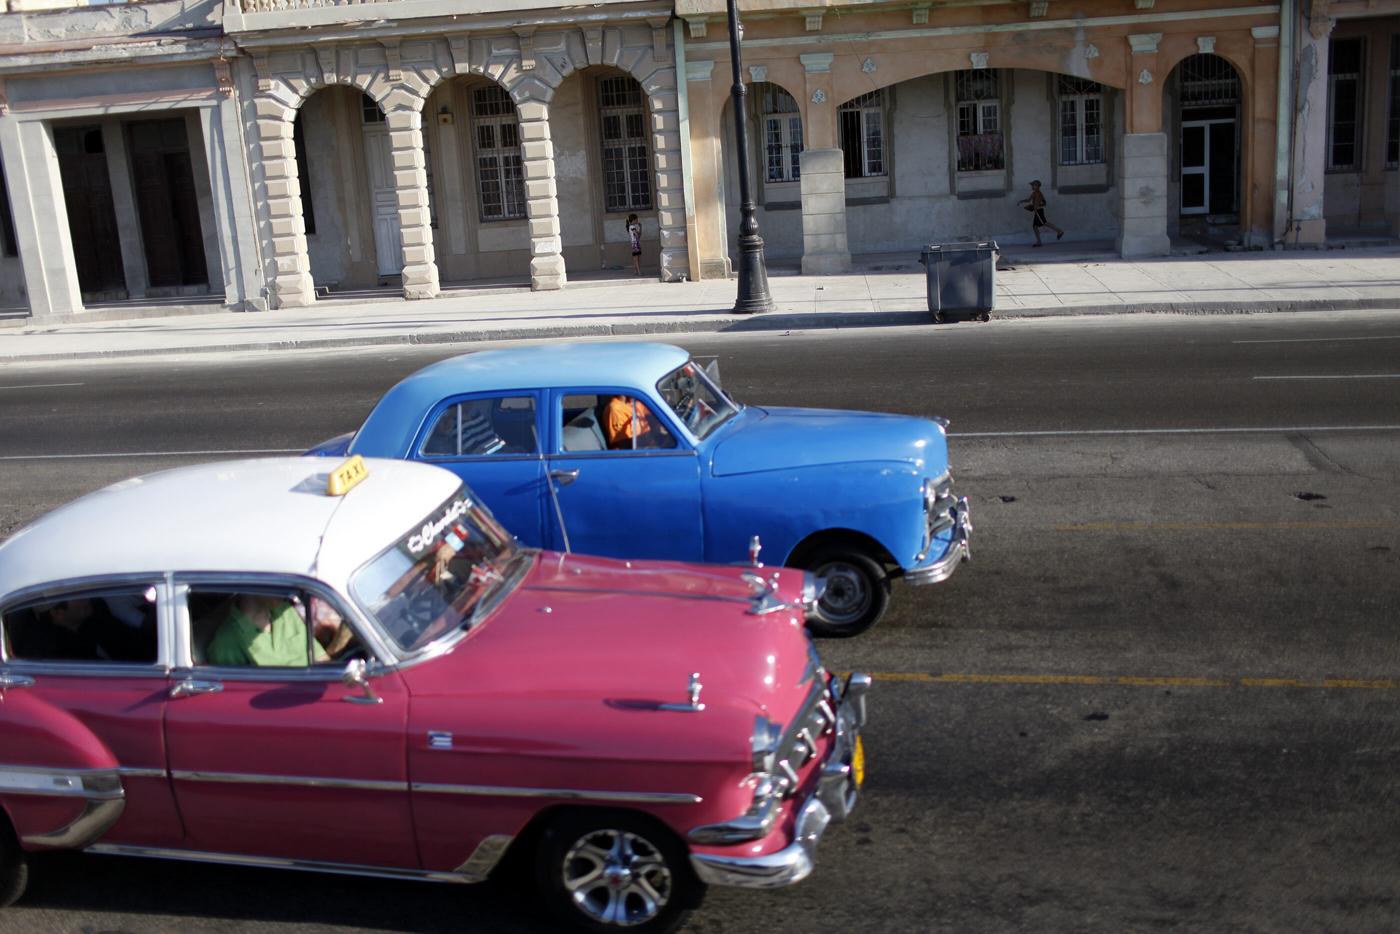 Encuentra las diferencias entre el carro de Maduro y los de Cuba (Fotocomparación)